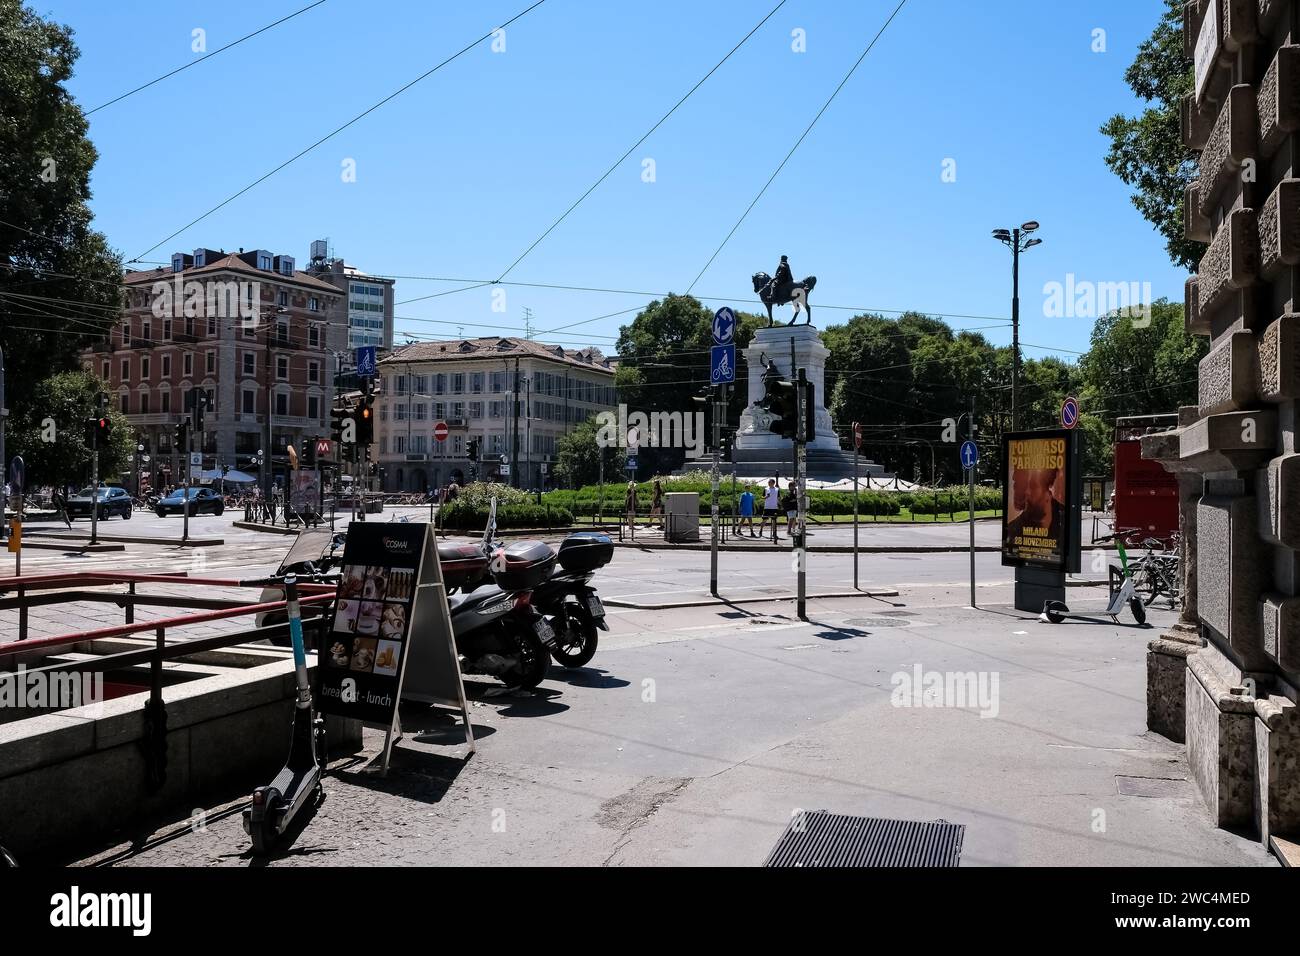 Veduta di largo Cairioli, una piazza situata nel centro di Milano, Italia, con sullo sfondo il monumento a Giuseppe Garibaldi (1895) Foto Stock